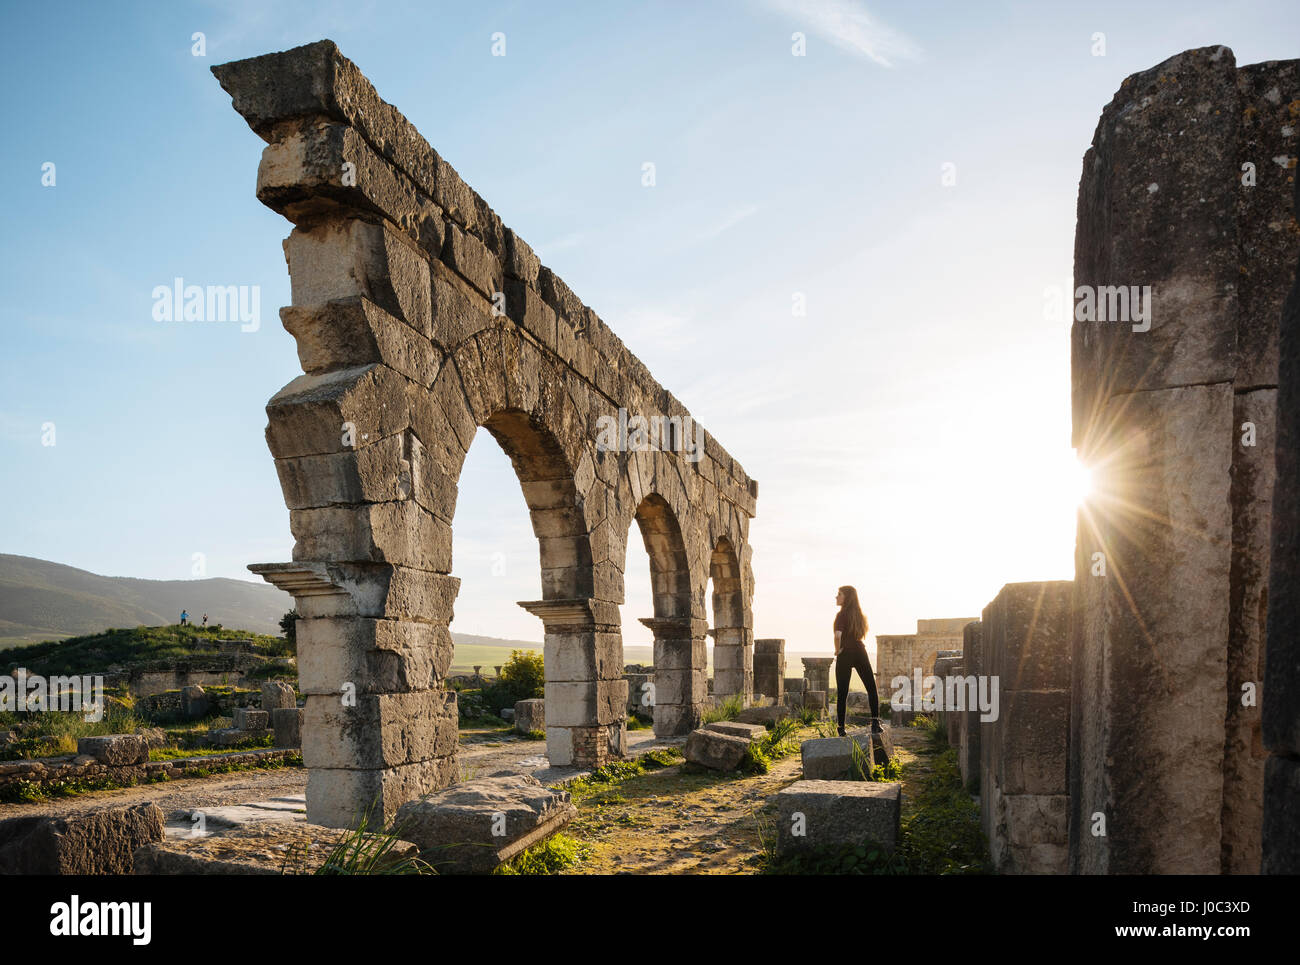 Ruines romaines de Volubilis, Meknès, Maroc, Afrique du Nord Banque D'Images